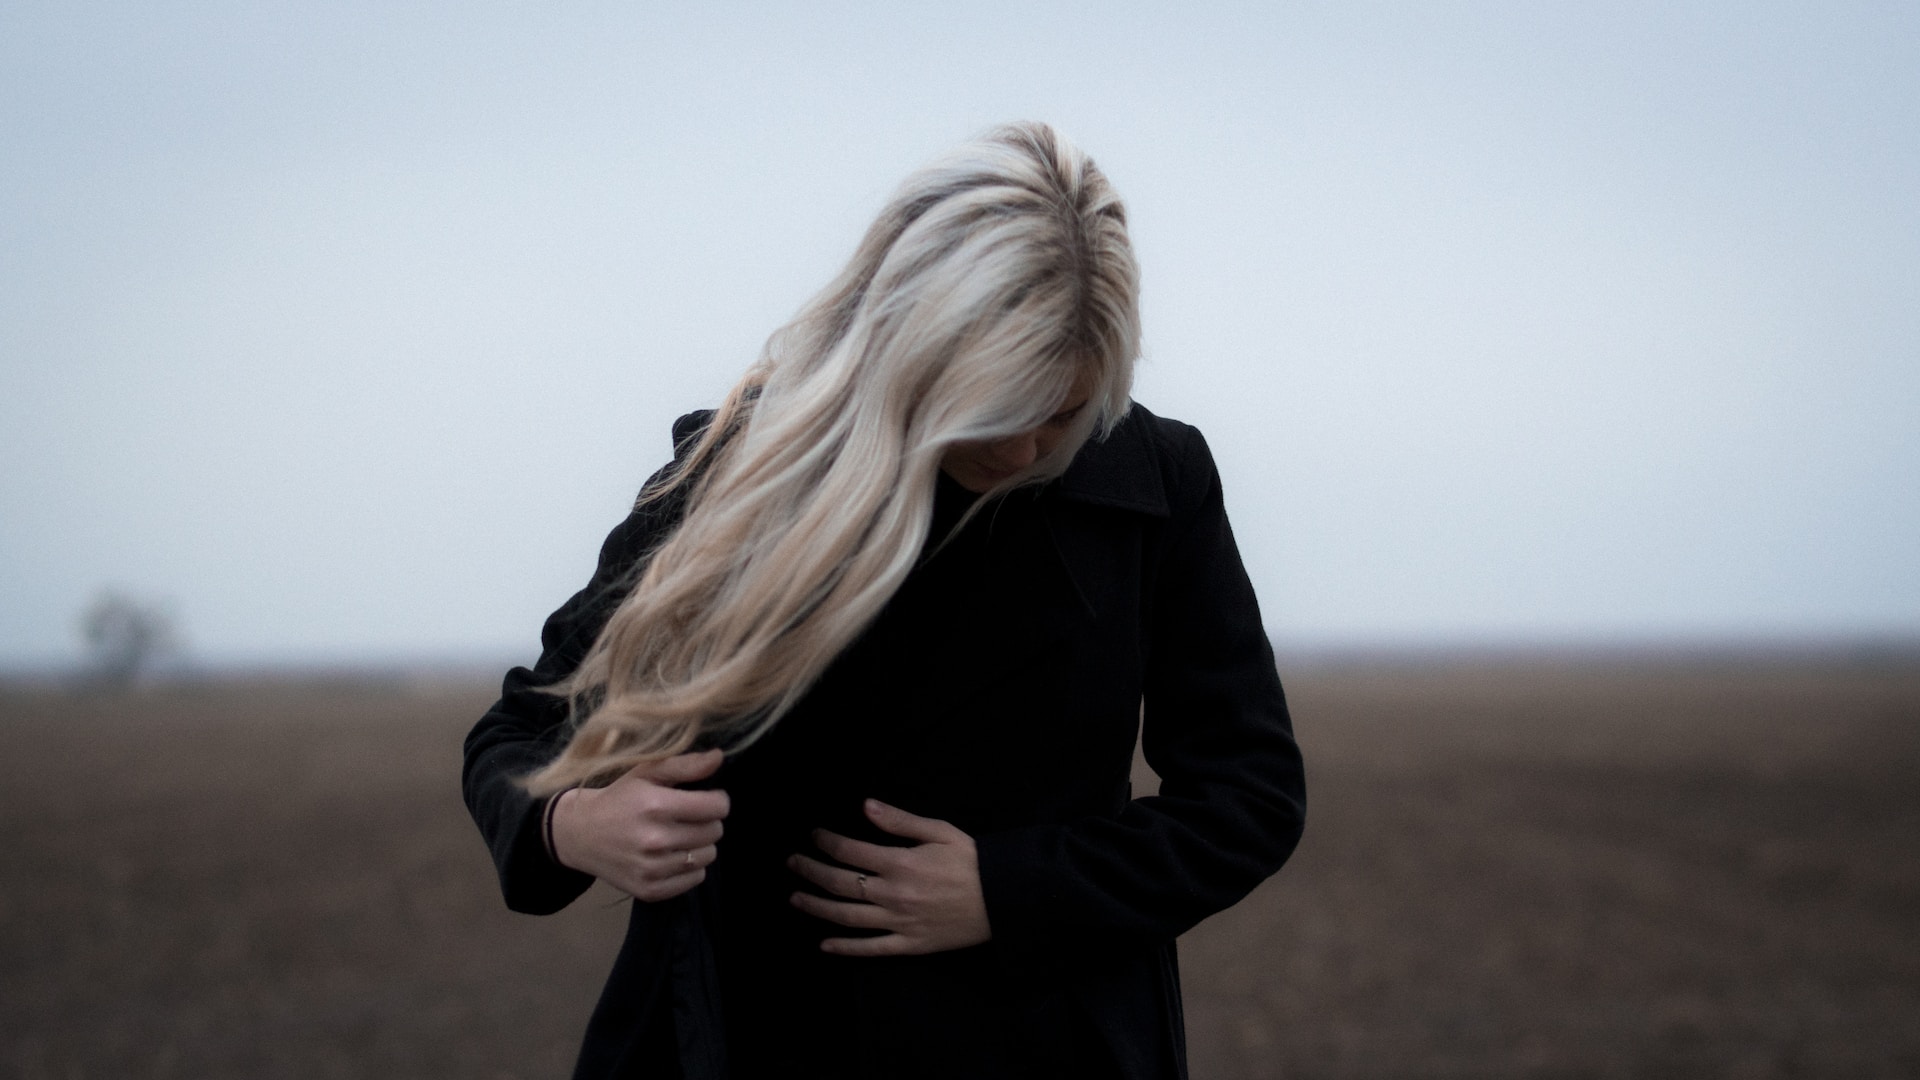 Zimny blond – komu pasuje i jak go uzyskać?